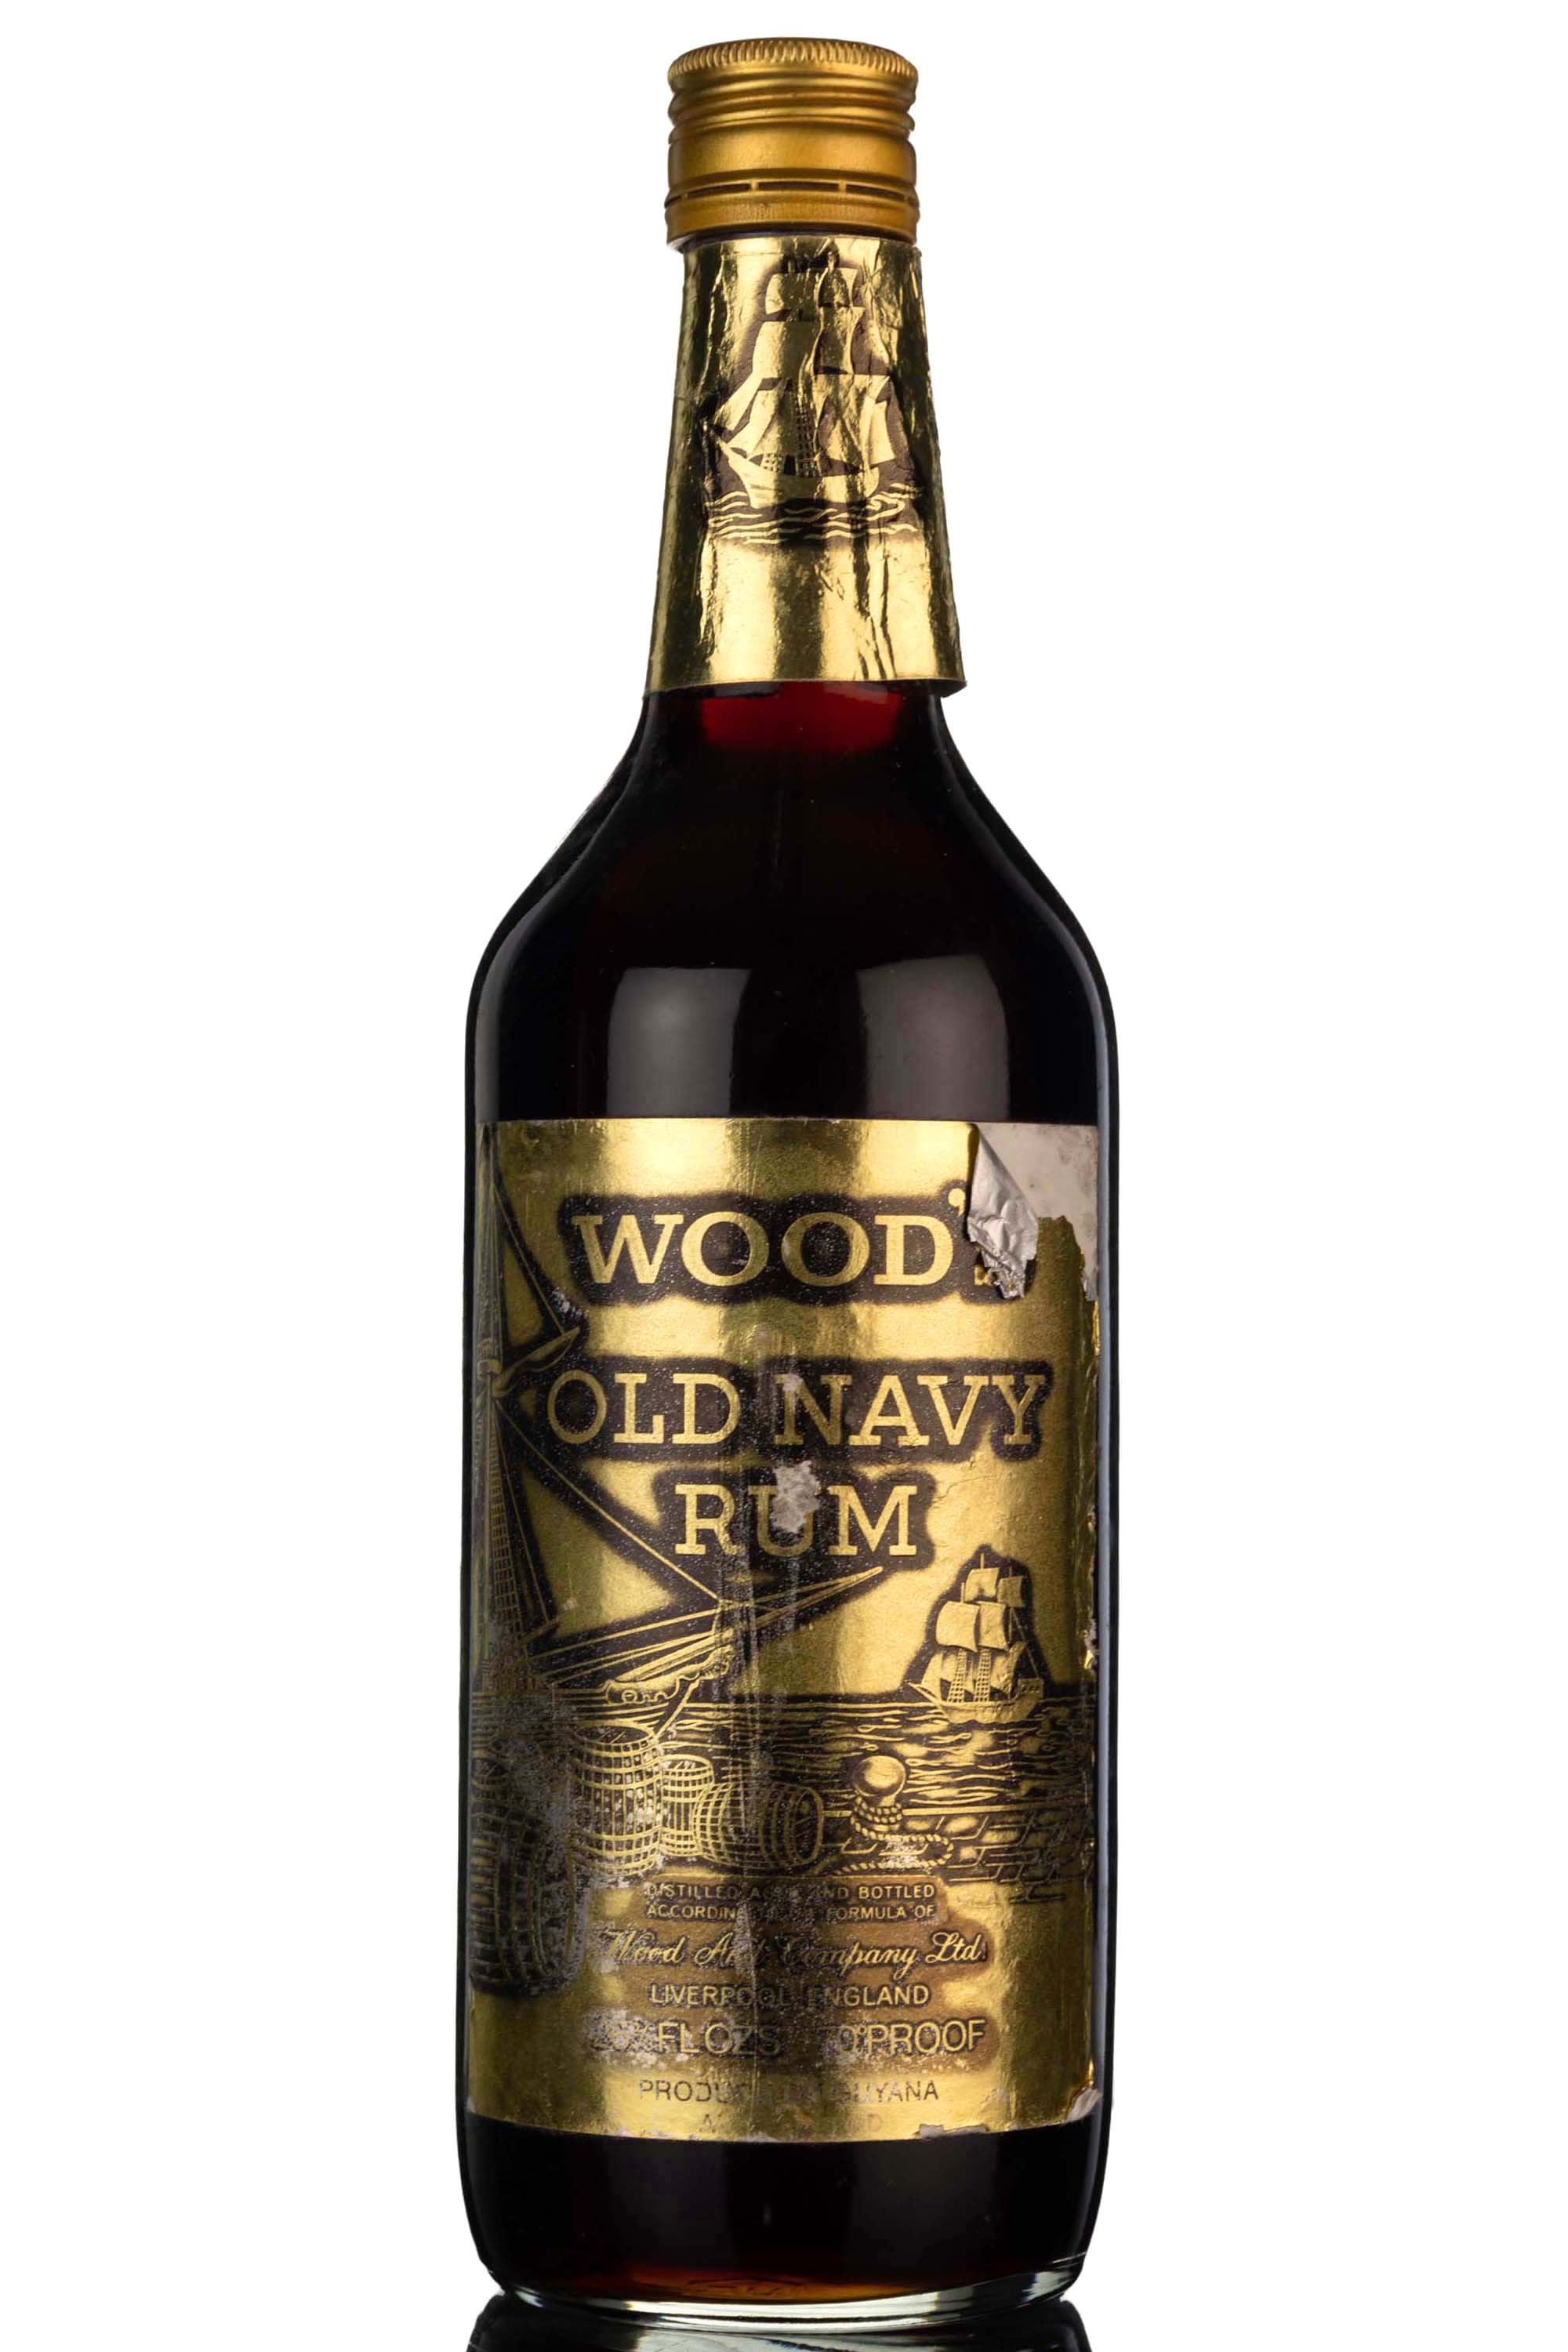 Woods Old Navy Rum - 1970s